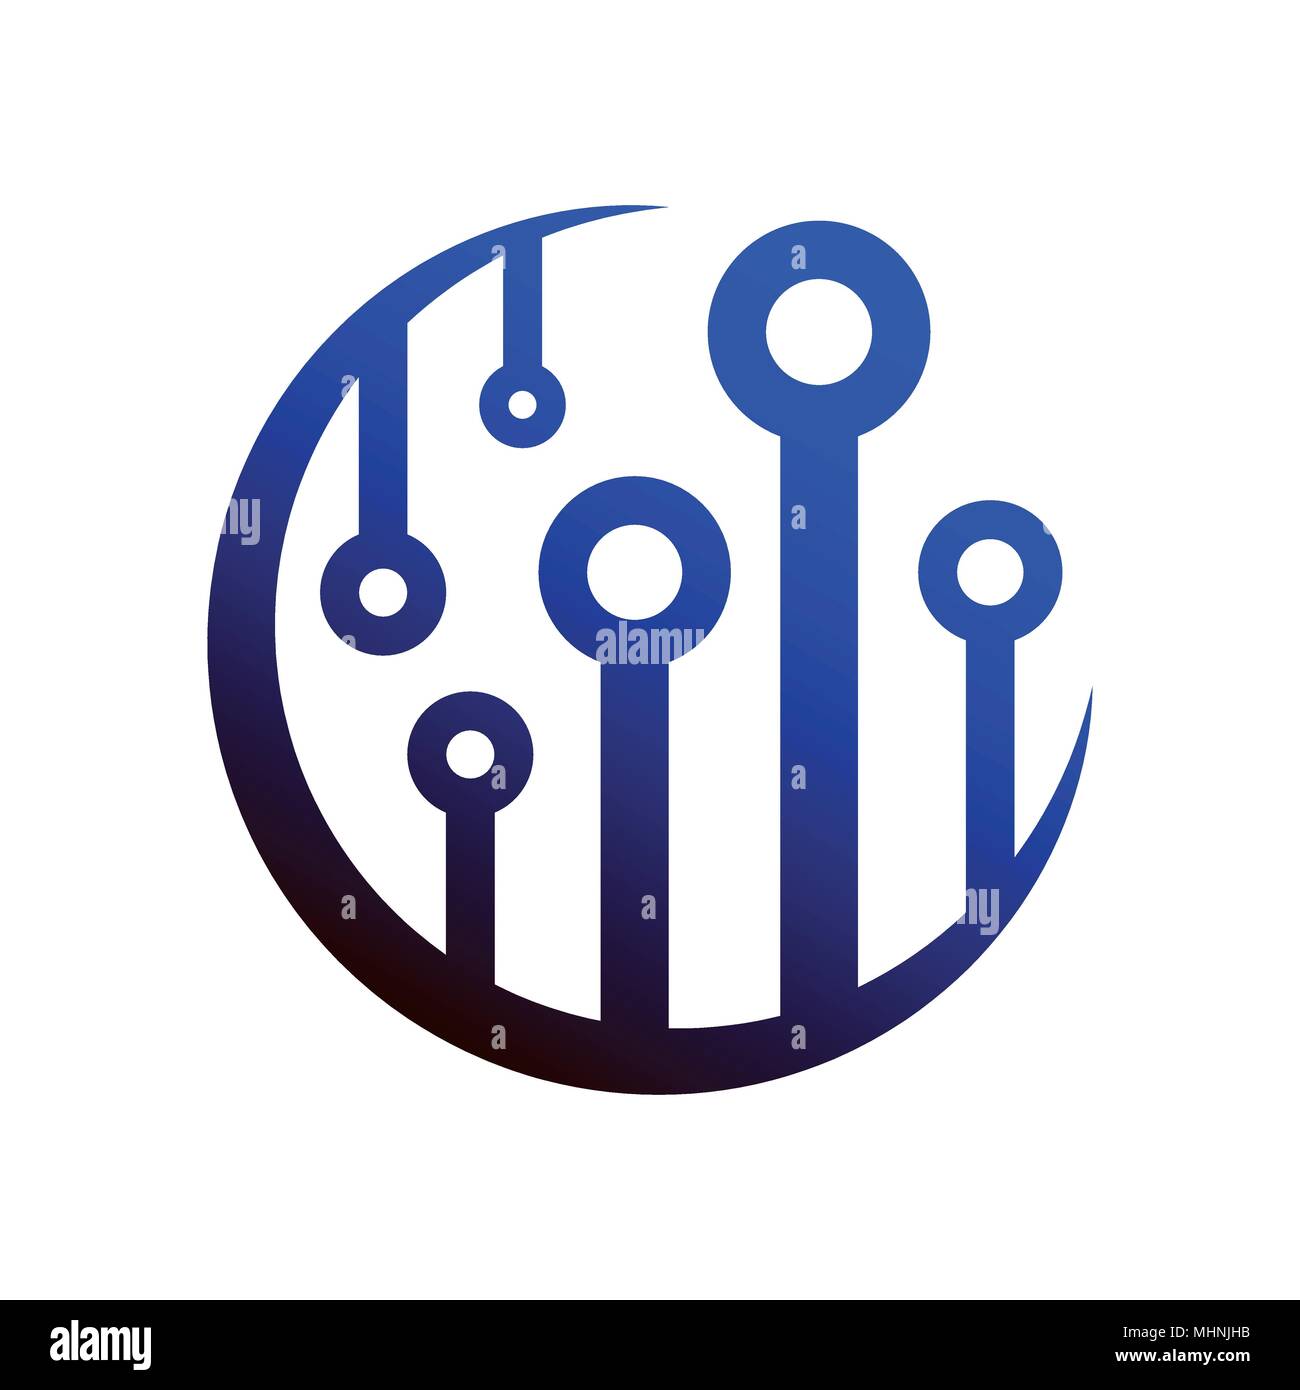 Tecnologia - colorati logo vettoriale modello per la corporate identity. Abstract network sign. Rete, internet concetto tech illustrazione. Elemento di design. Illustrazione Vettoriale